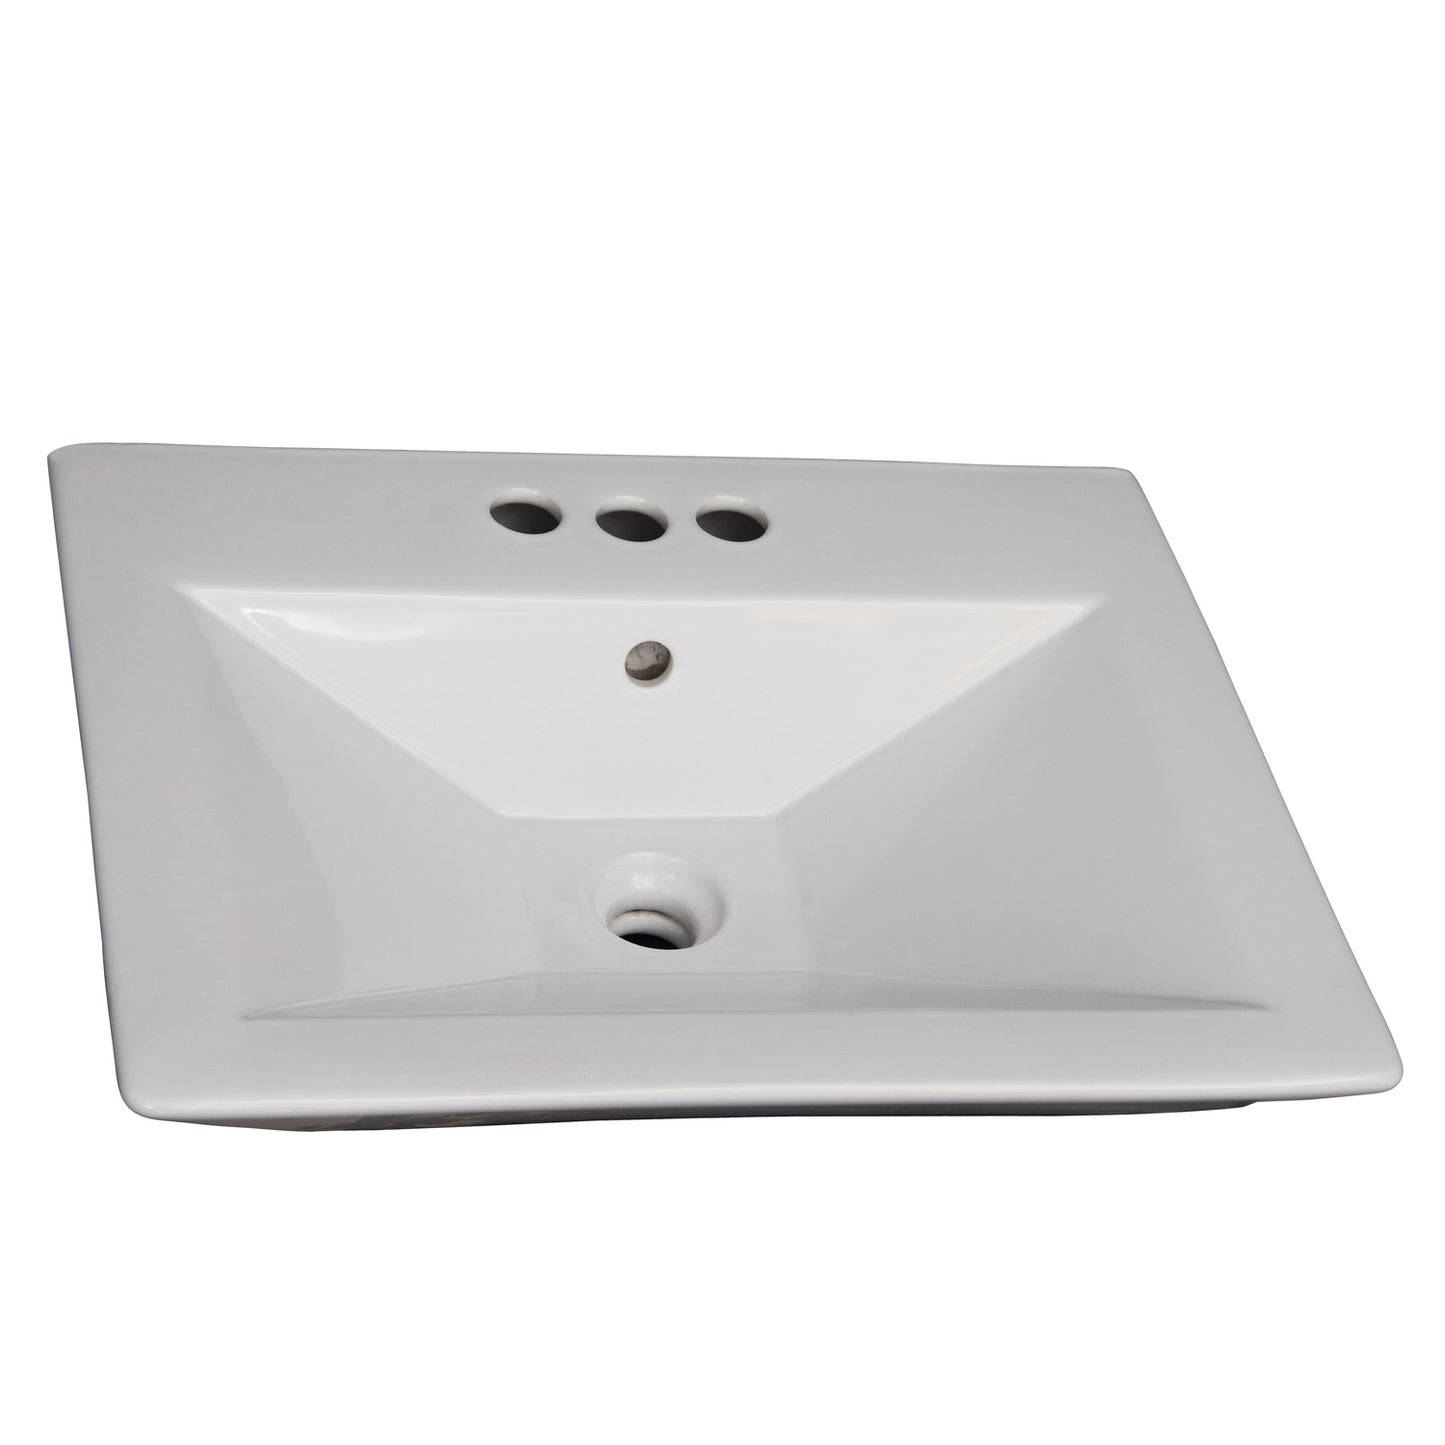 Opulence 23" Rectangular Pedestal Bathroom Sink White for 4" Centerset